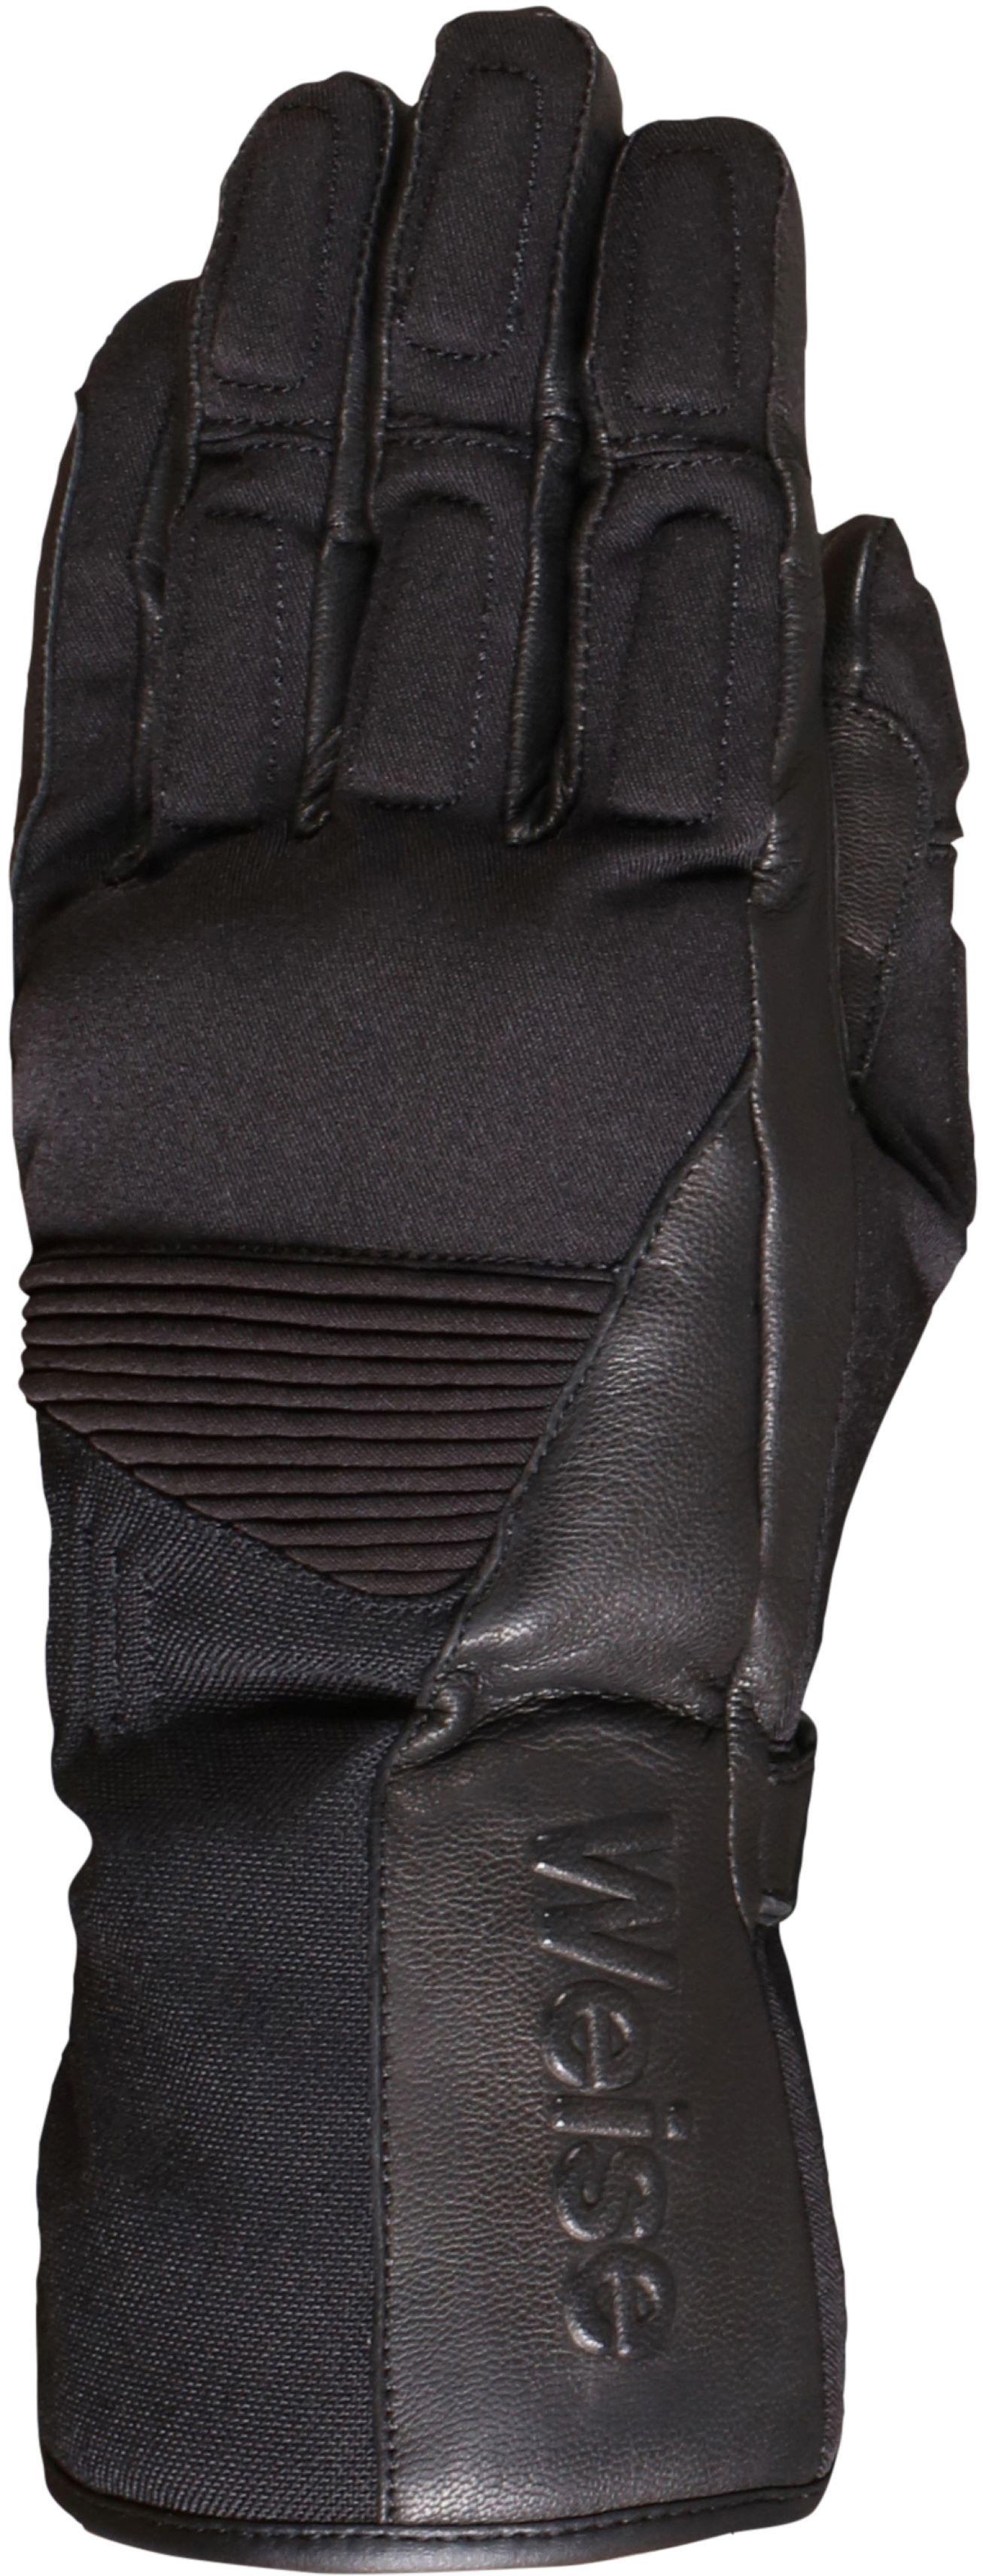 Weise Rider Motorcycle Gloves - Black, 4Xl